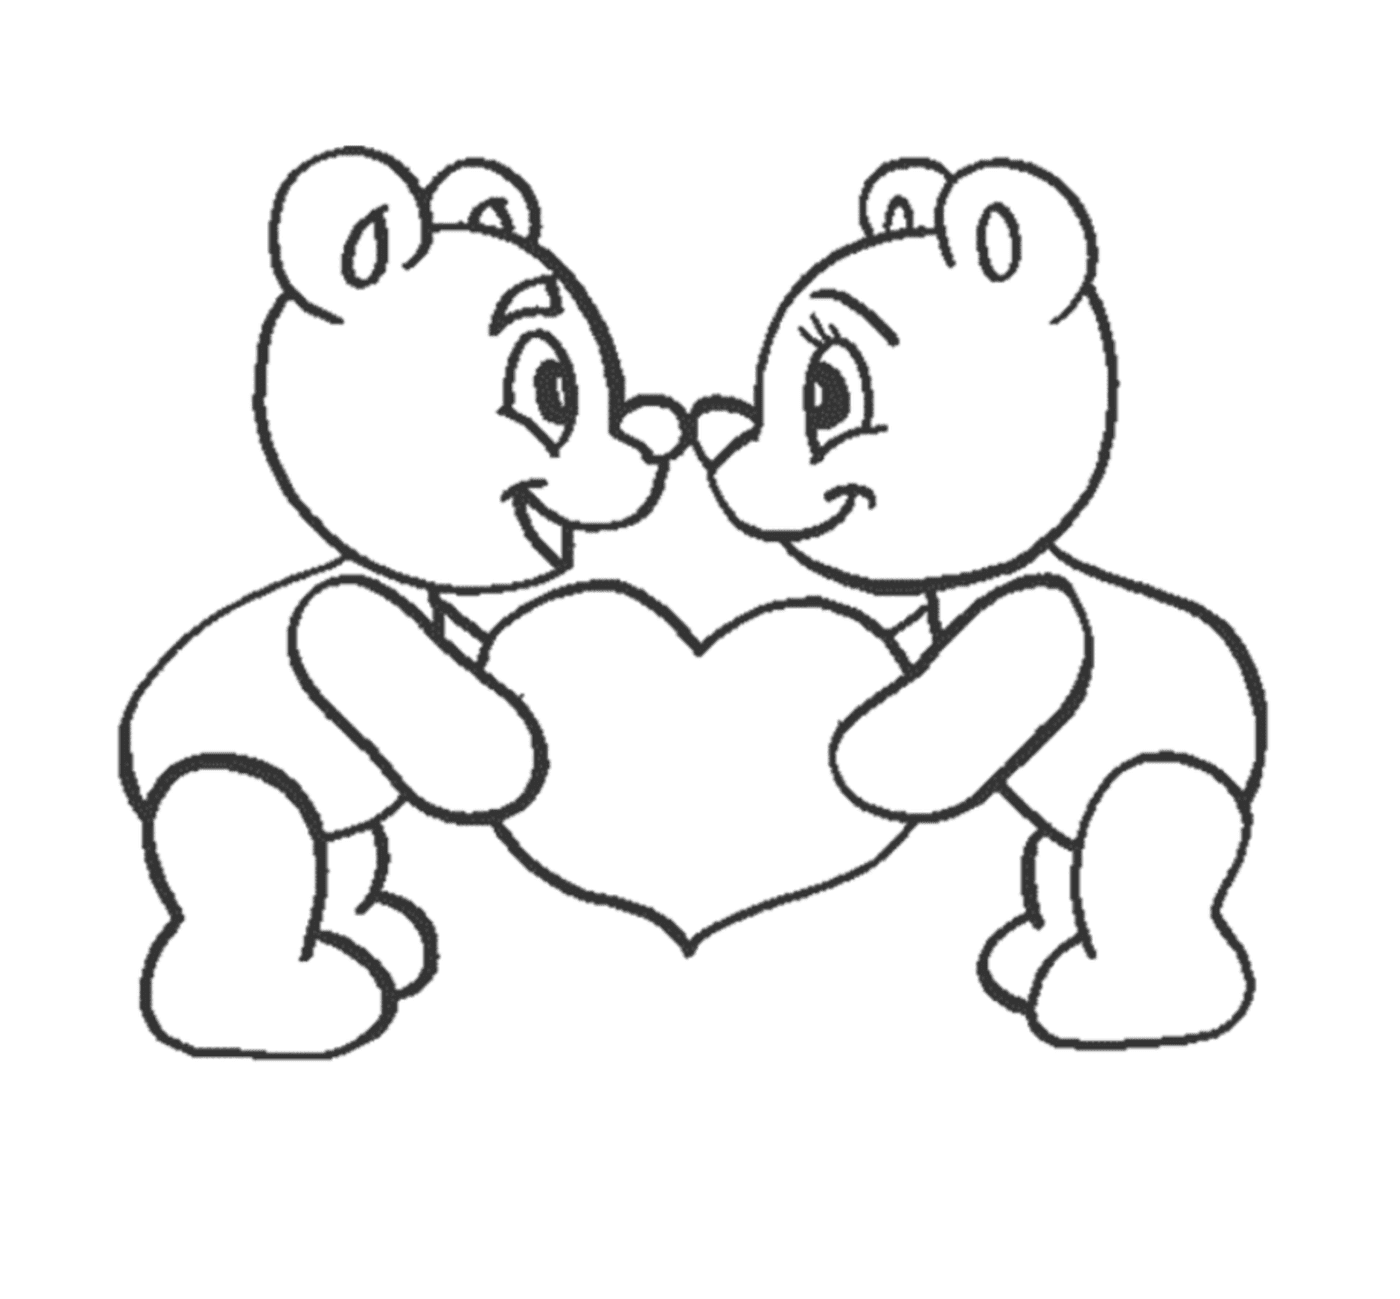  两只泰迪熊手里握着一颗心 